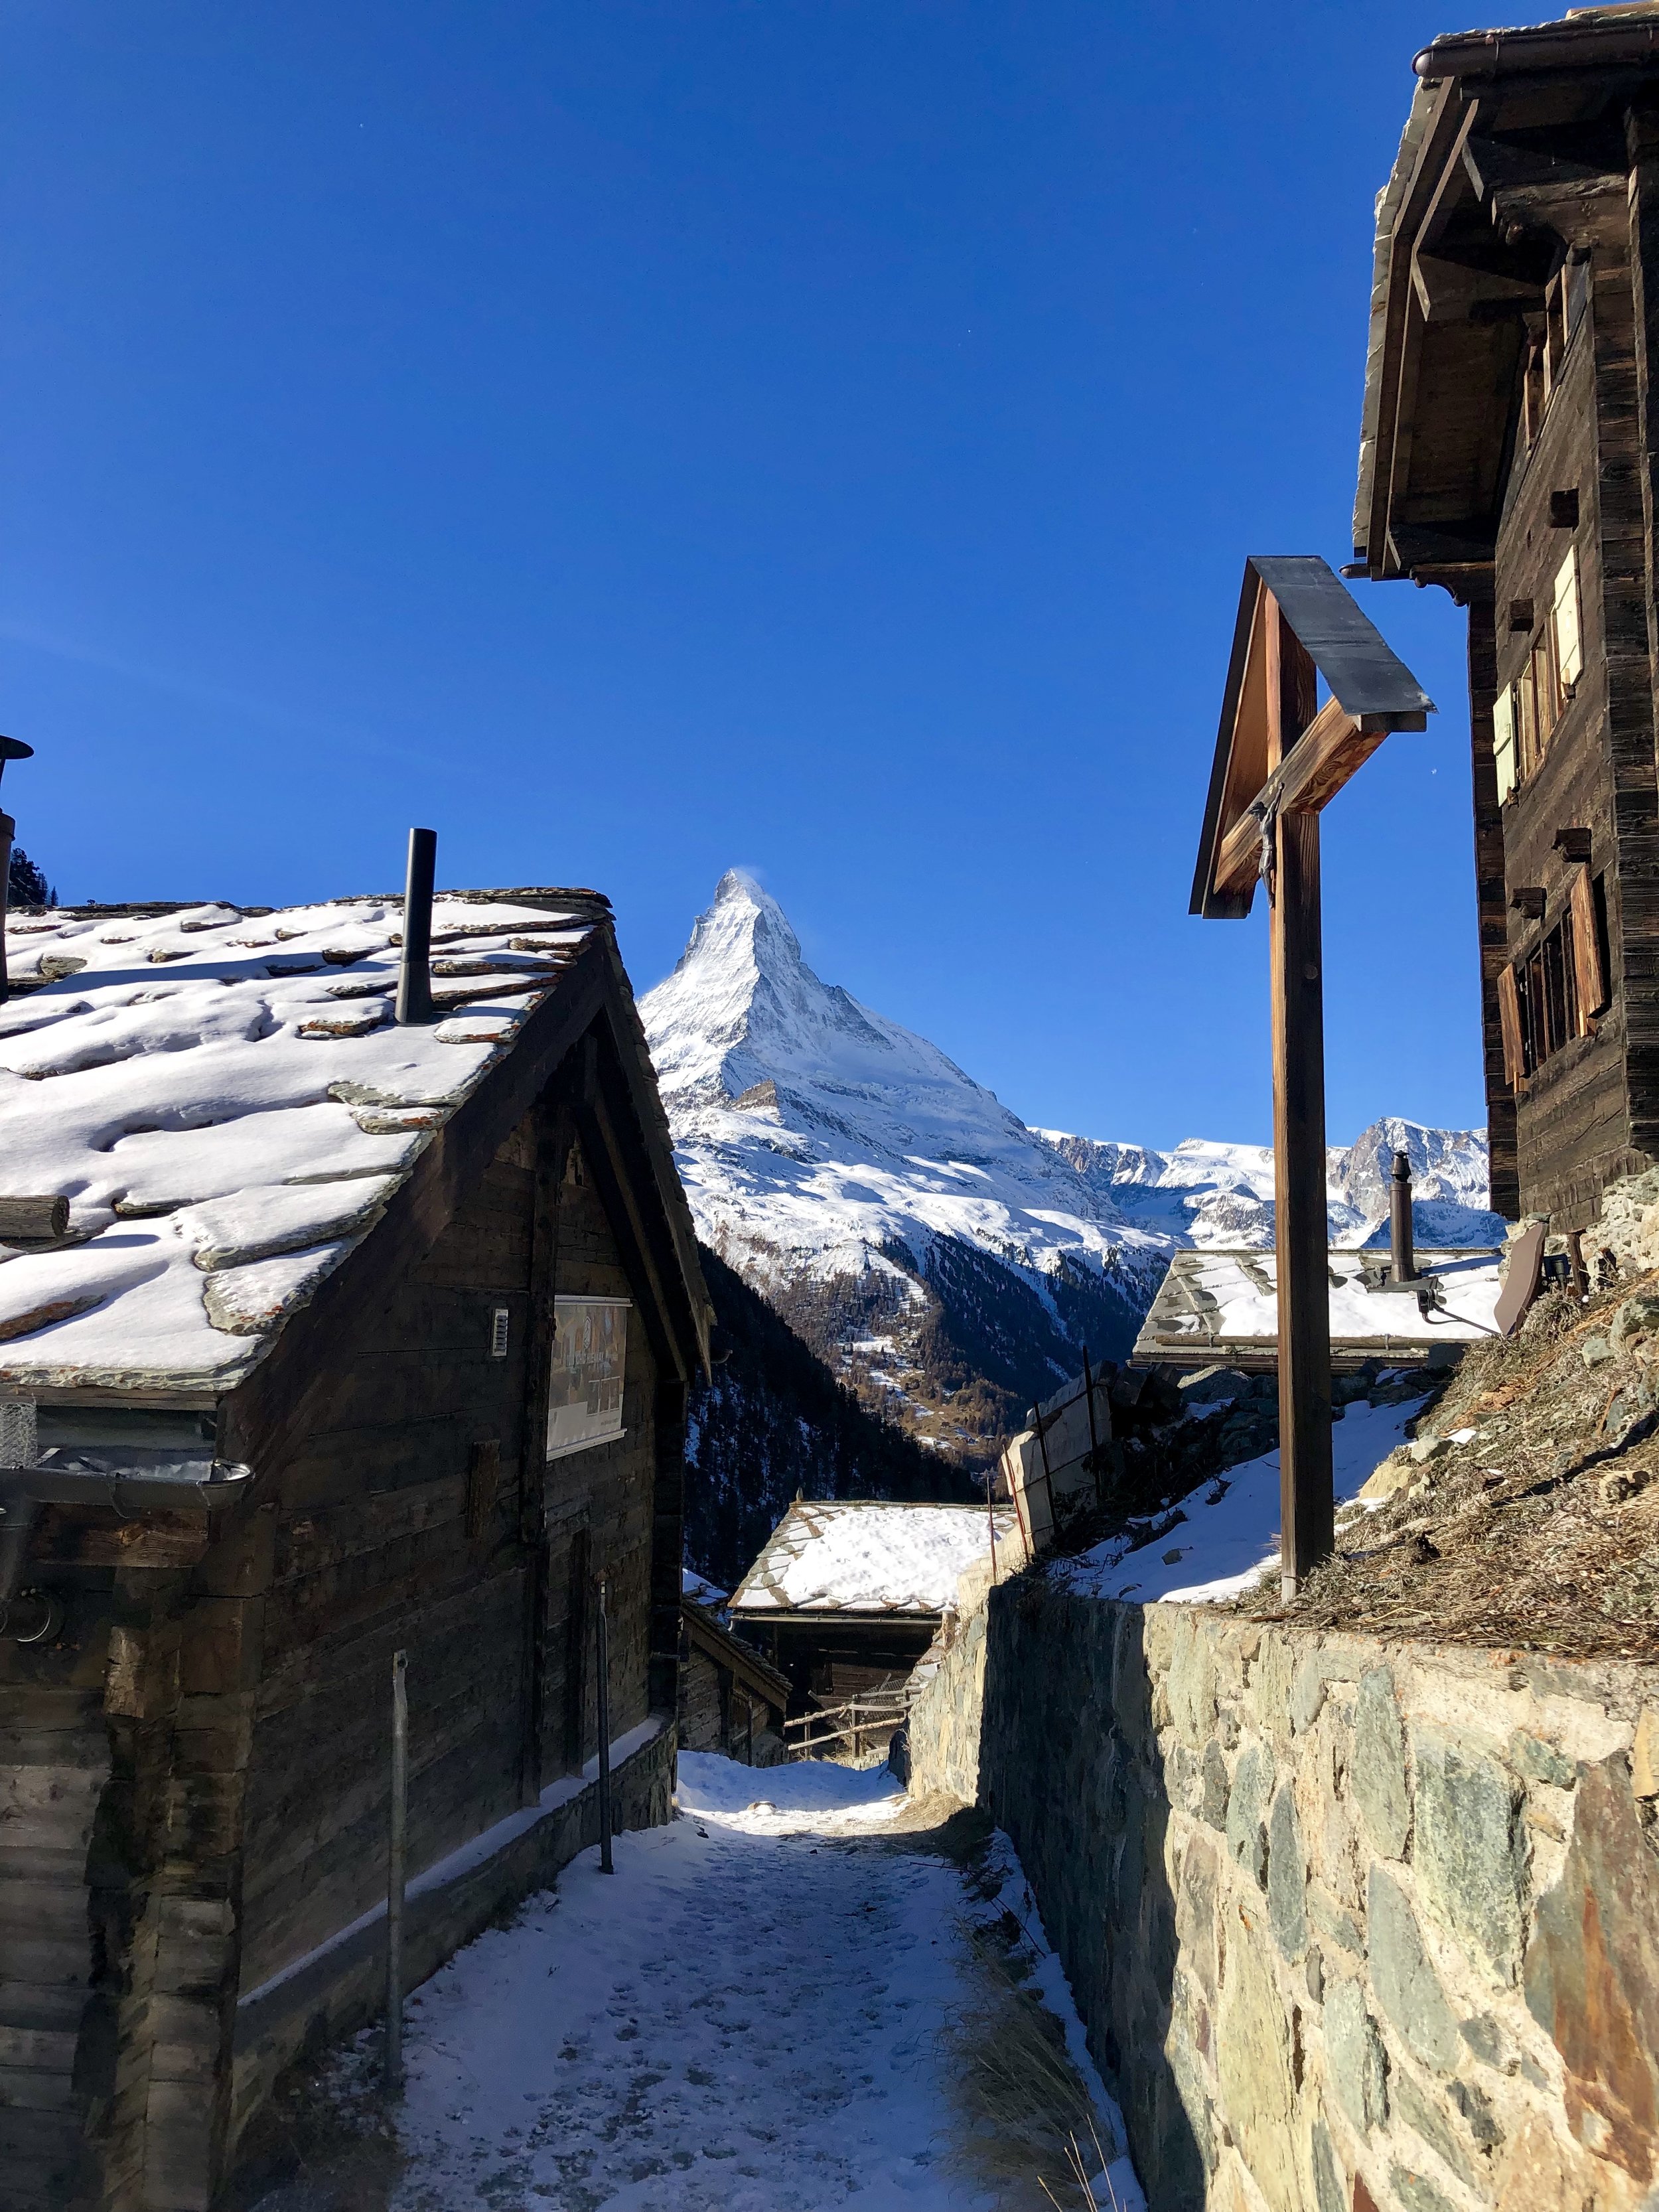 Town of Zermatt